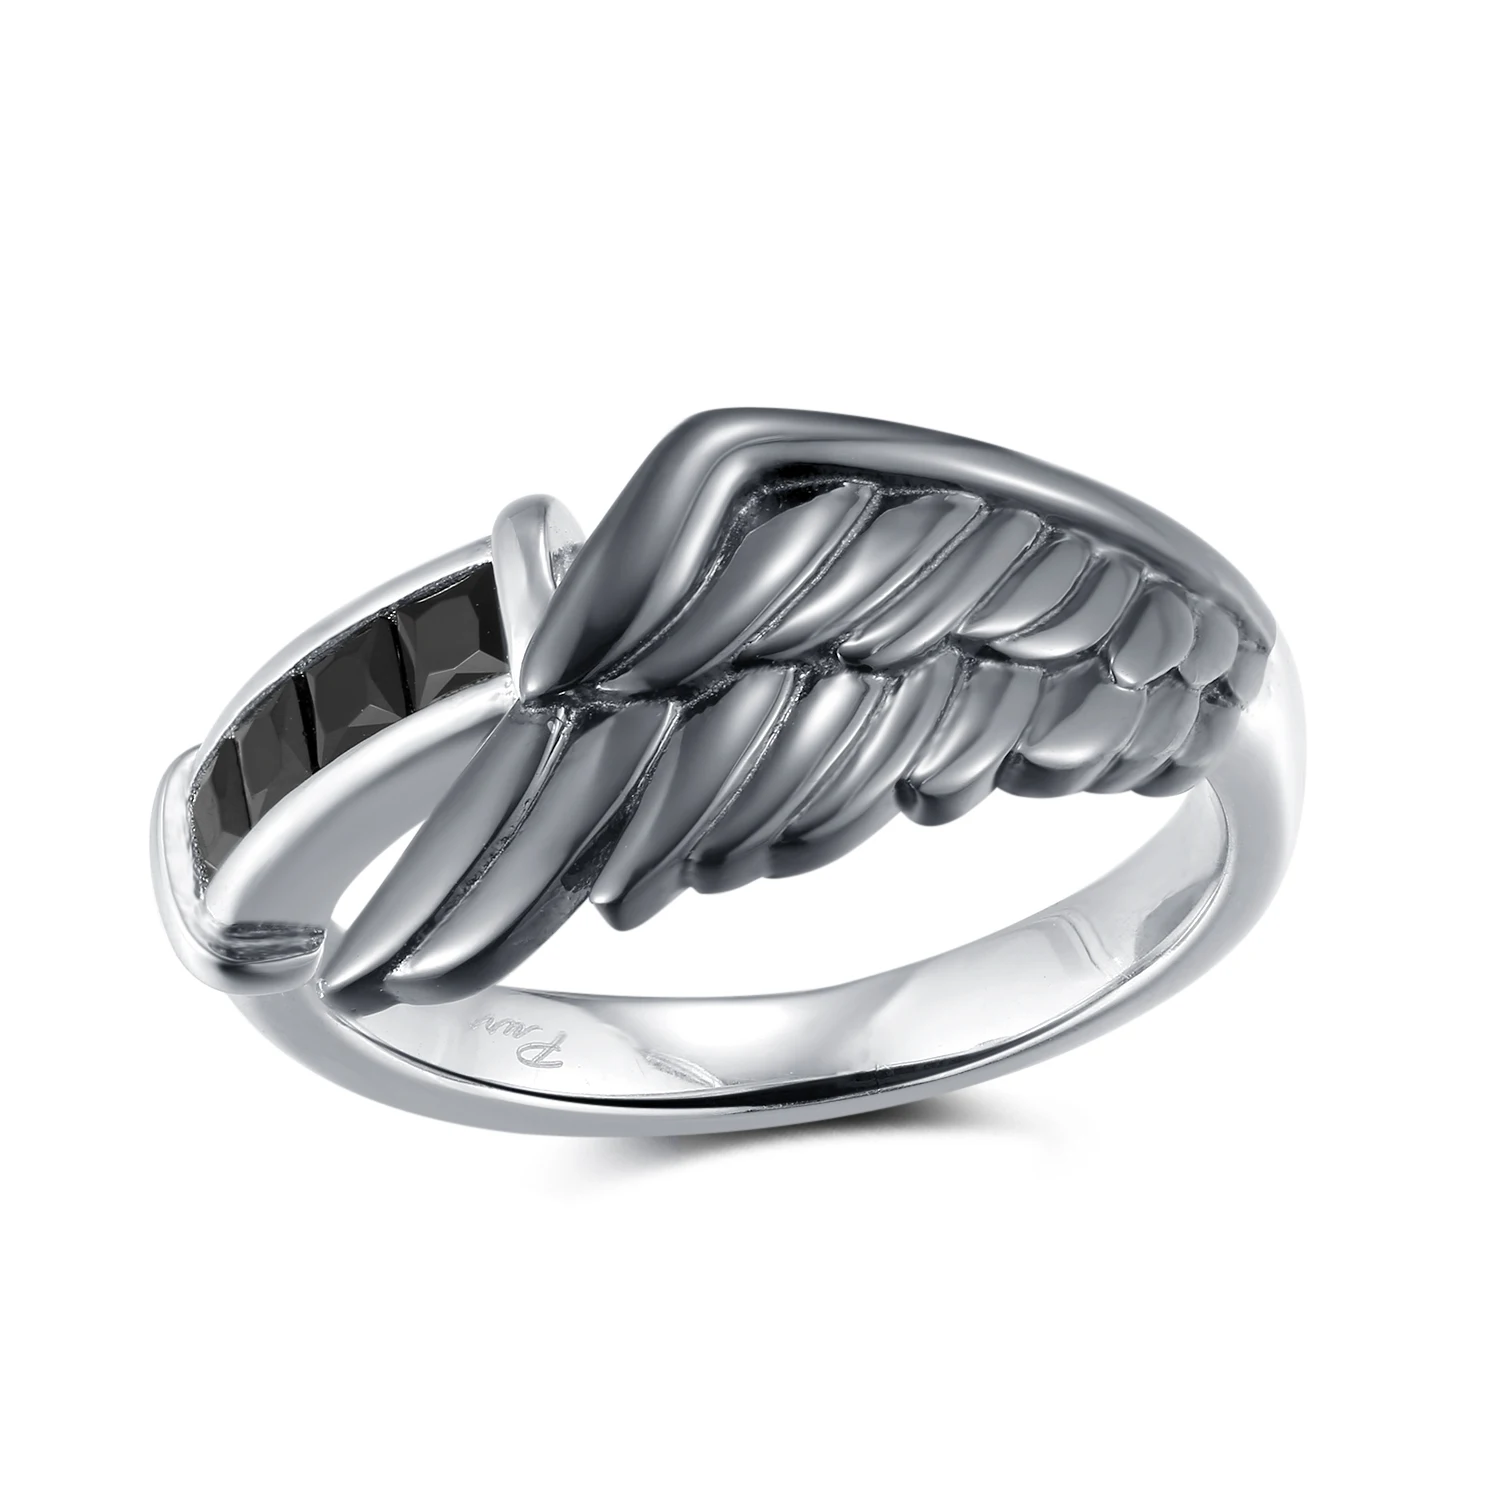 Final Fantasy VII Сефирот кольцо с крыльями ангела для мужчин и женщин ювелирные изделия из стерлингового серебра